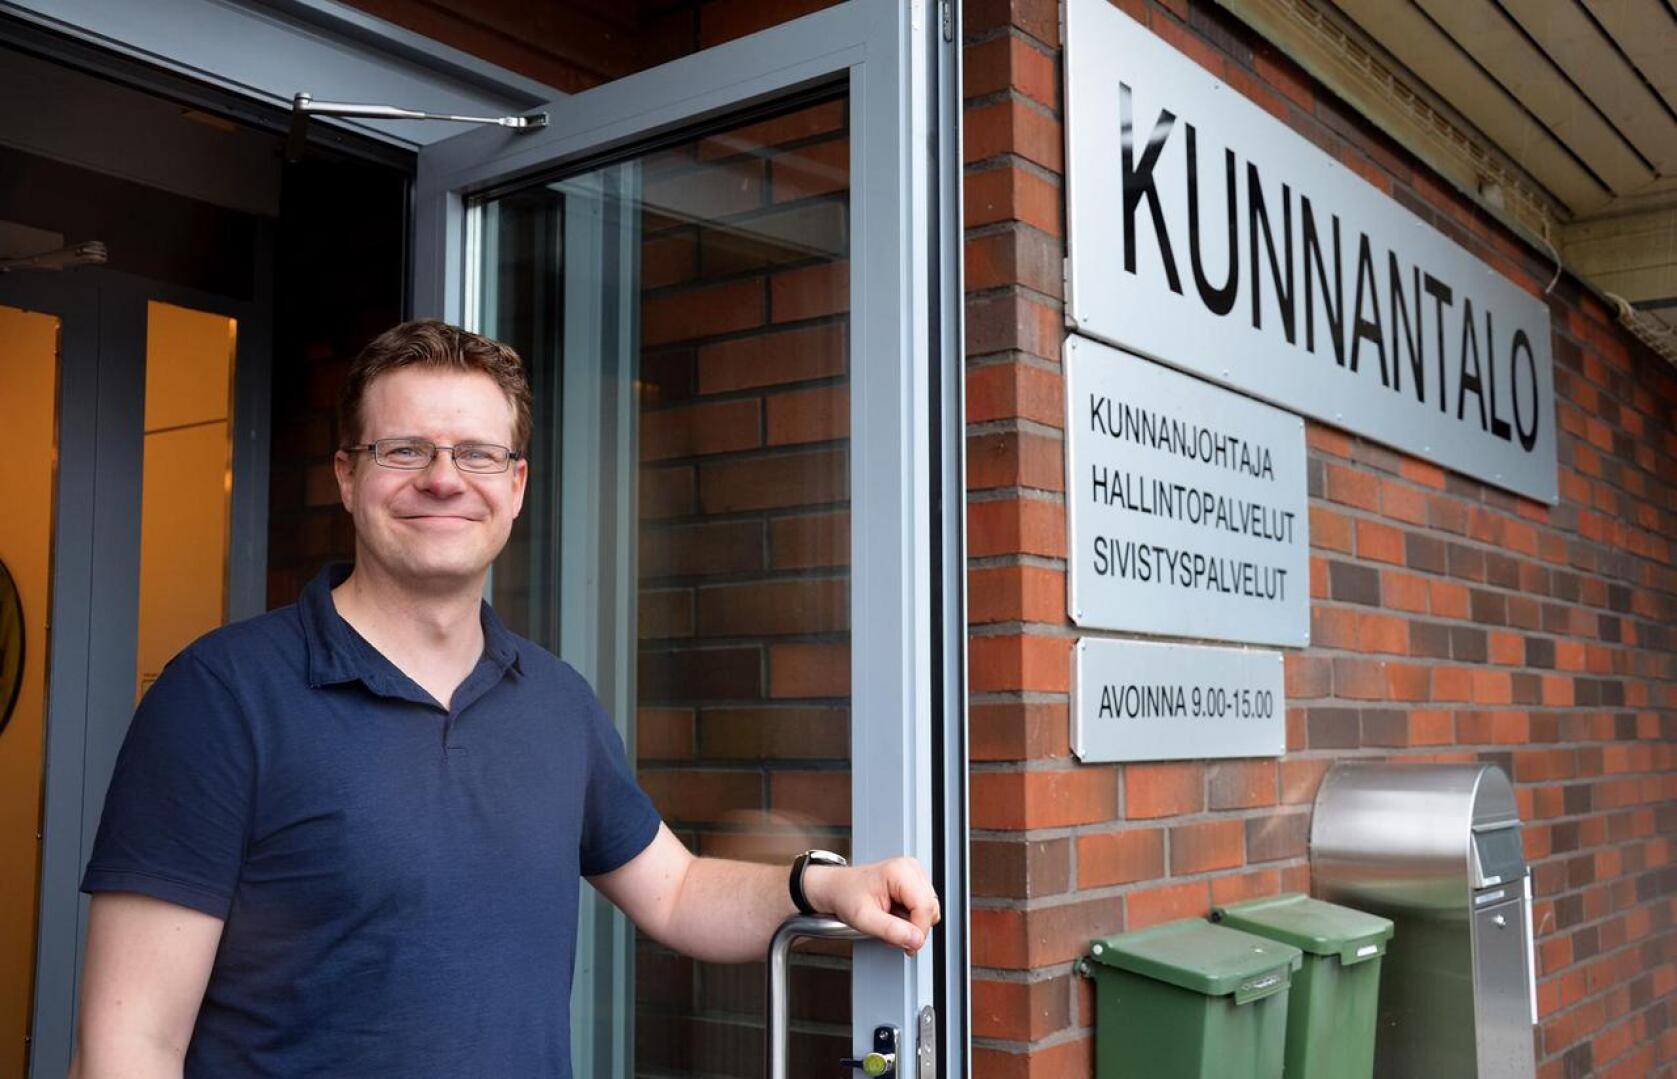 Matti Pulkkinen toivoo, että kuntalaiset tulisivat juttelemaan hänen luokseen kunnantalolle tai ottaisivat kylillä kiinni hihasta, jos on asiaa.